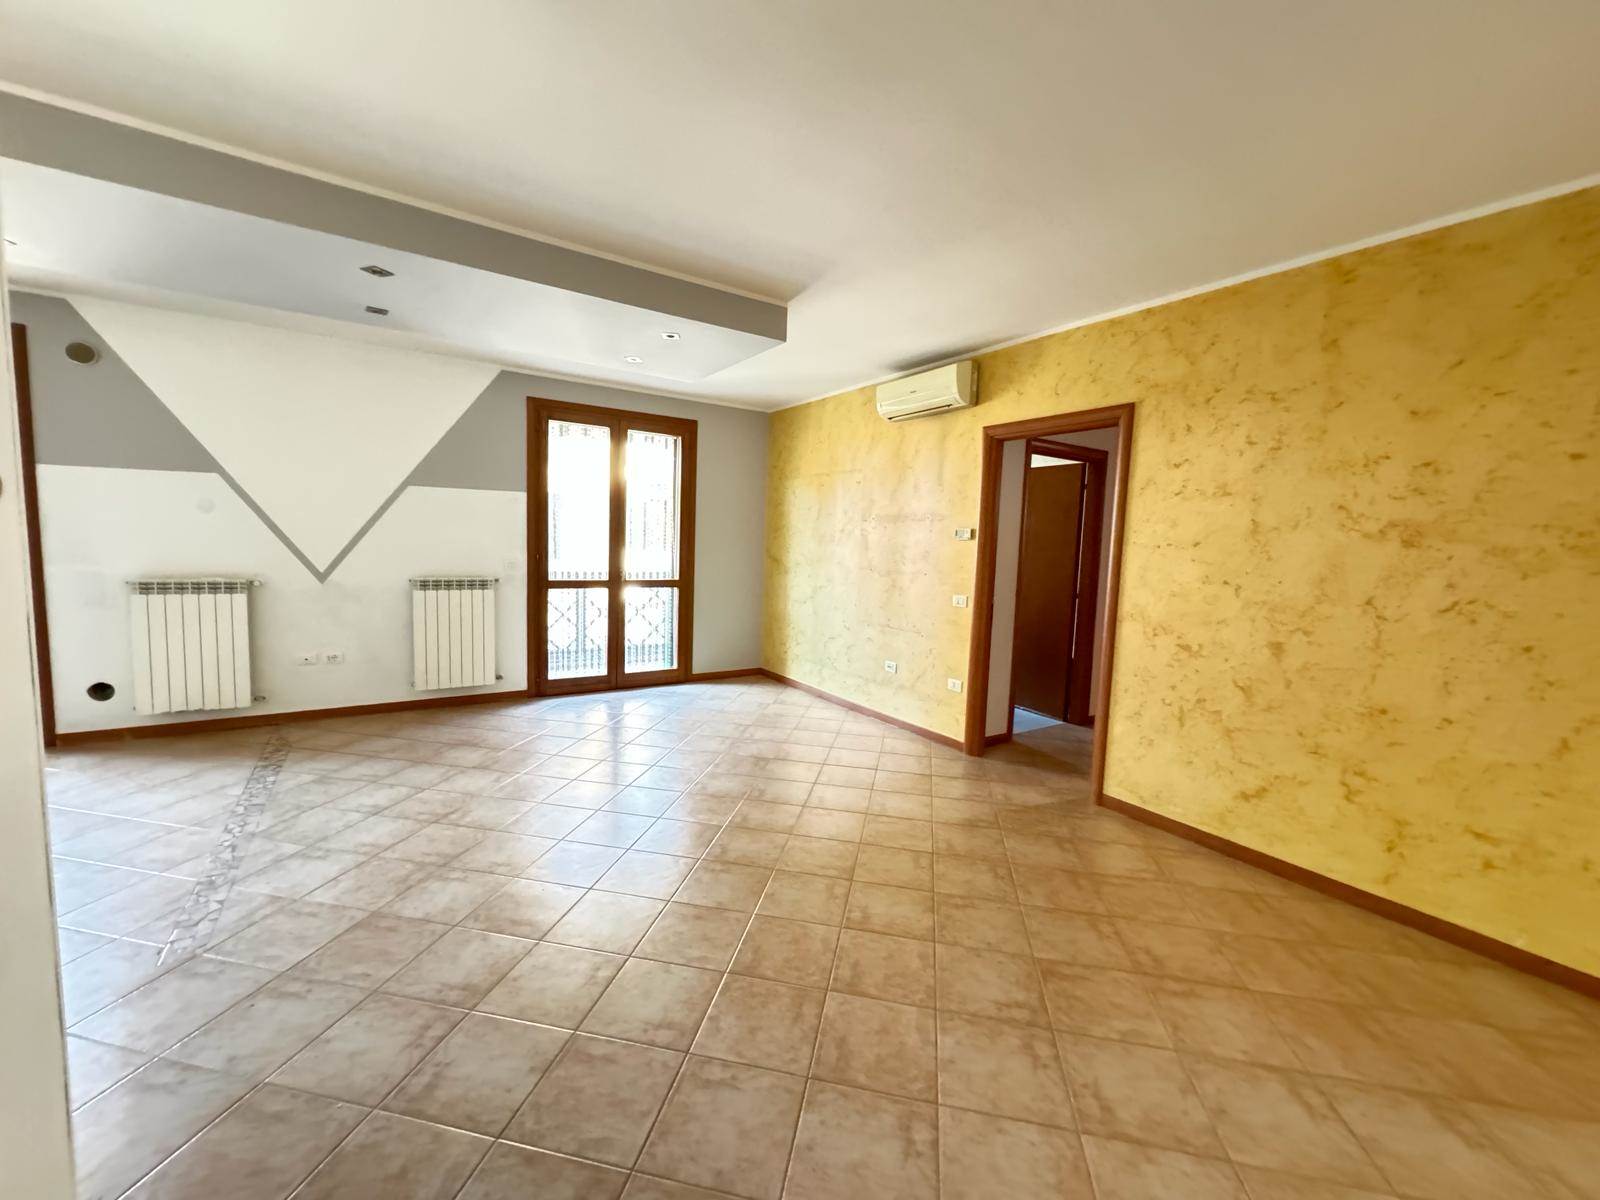 Appartamento in vendita a Sant'Elena, 4 locali, prezzo € 105.000 | PortaleAgenzieImmobiliari.it